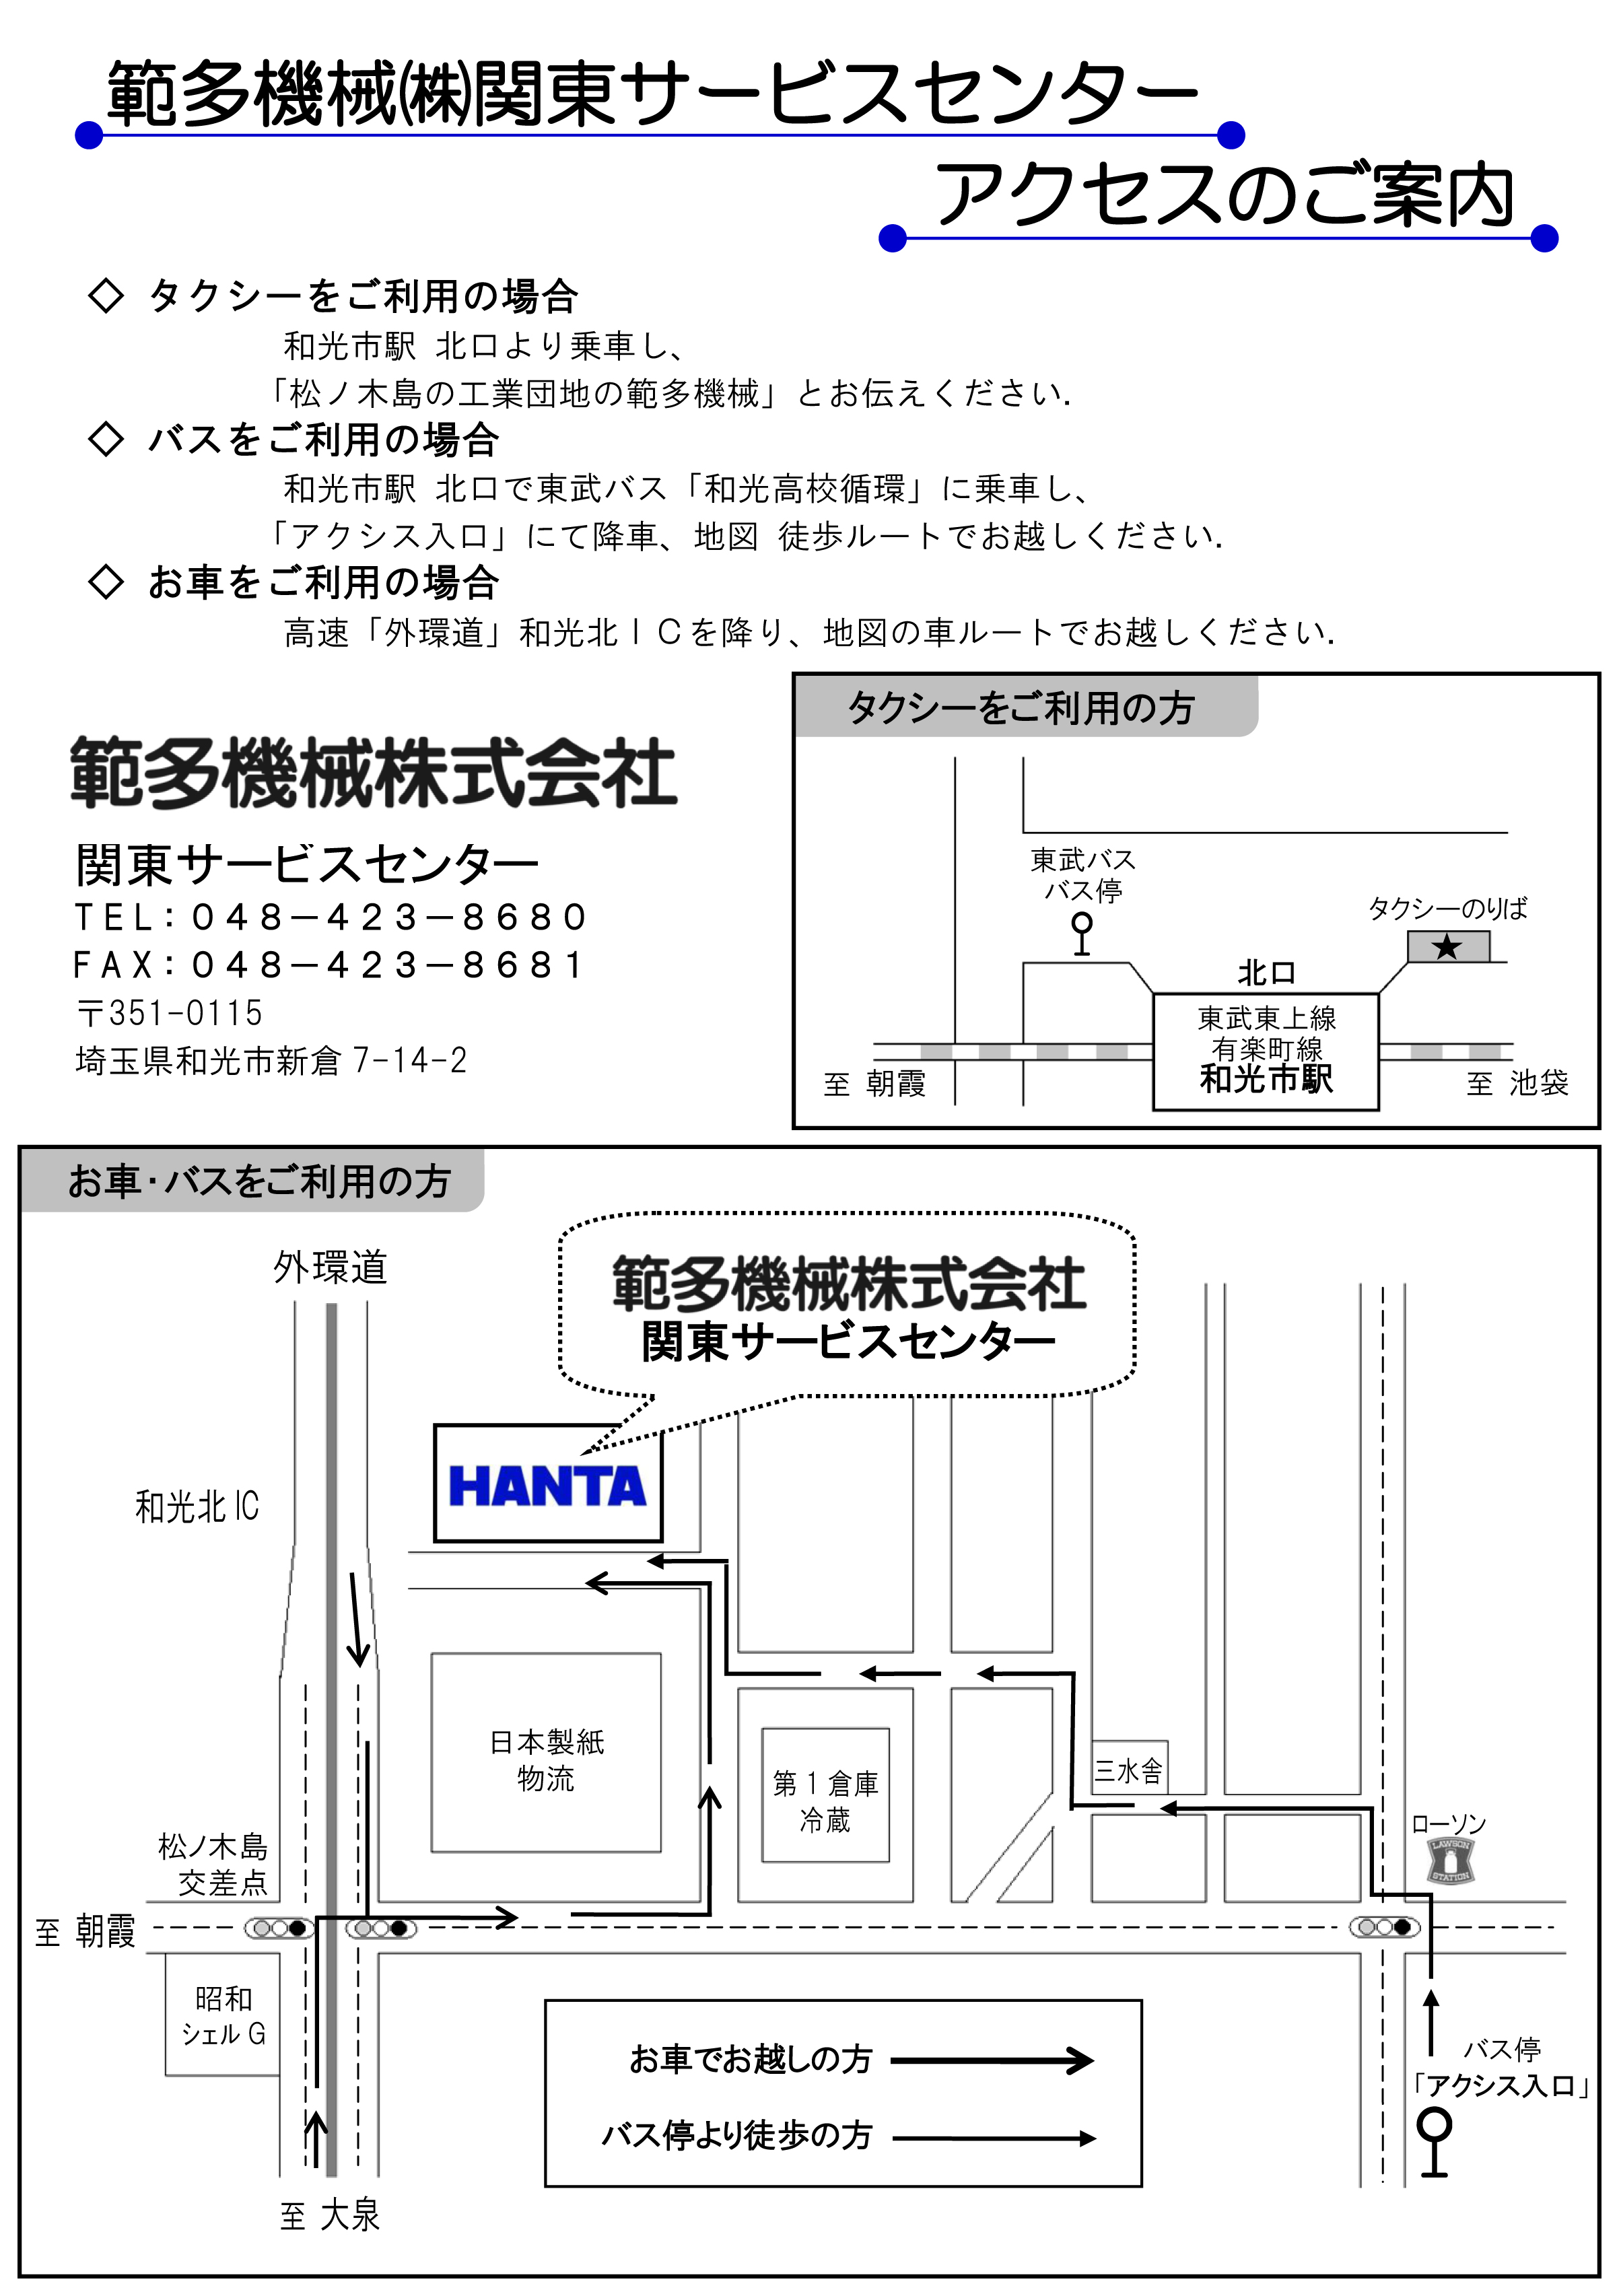 HANTA関東サービス工場アクセス